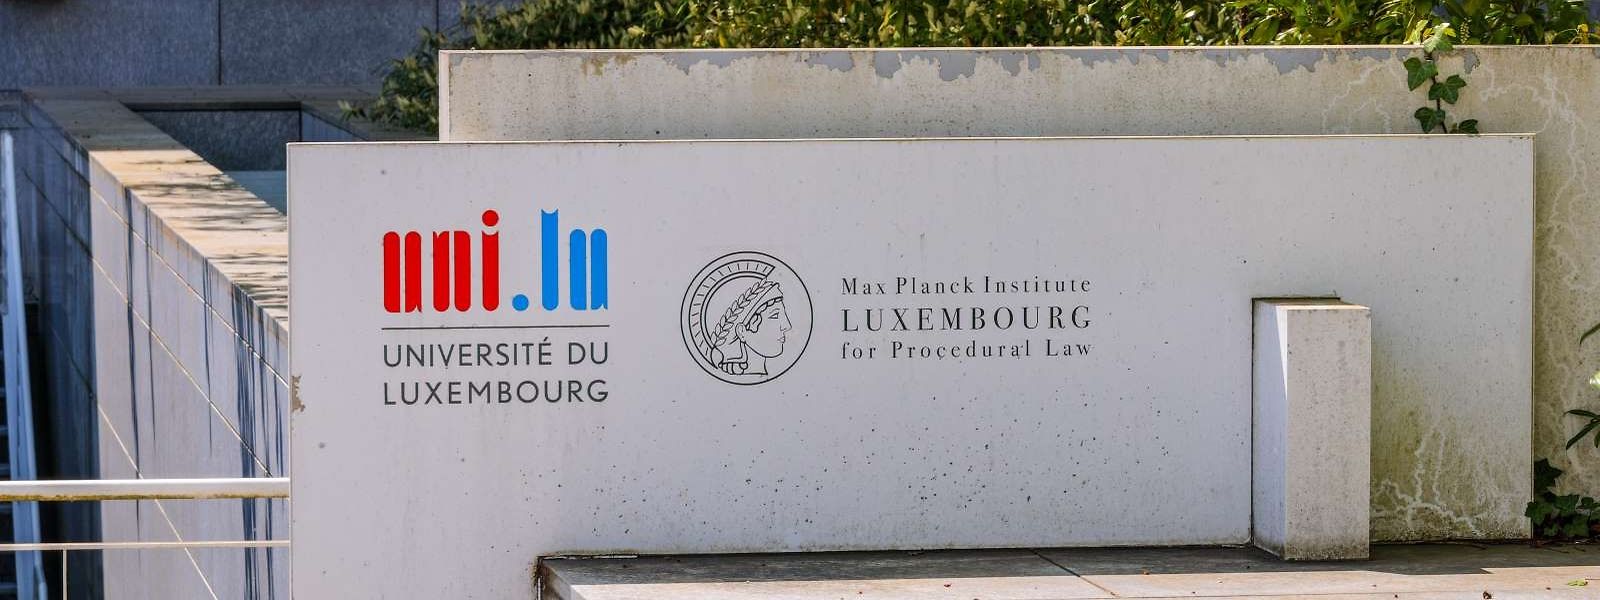 Die akademische Einrichtung in Luxemburg wird seit Jahren von Belästigungs- und Mobbingvorwürfen geplagt.